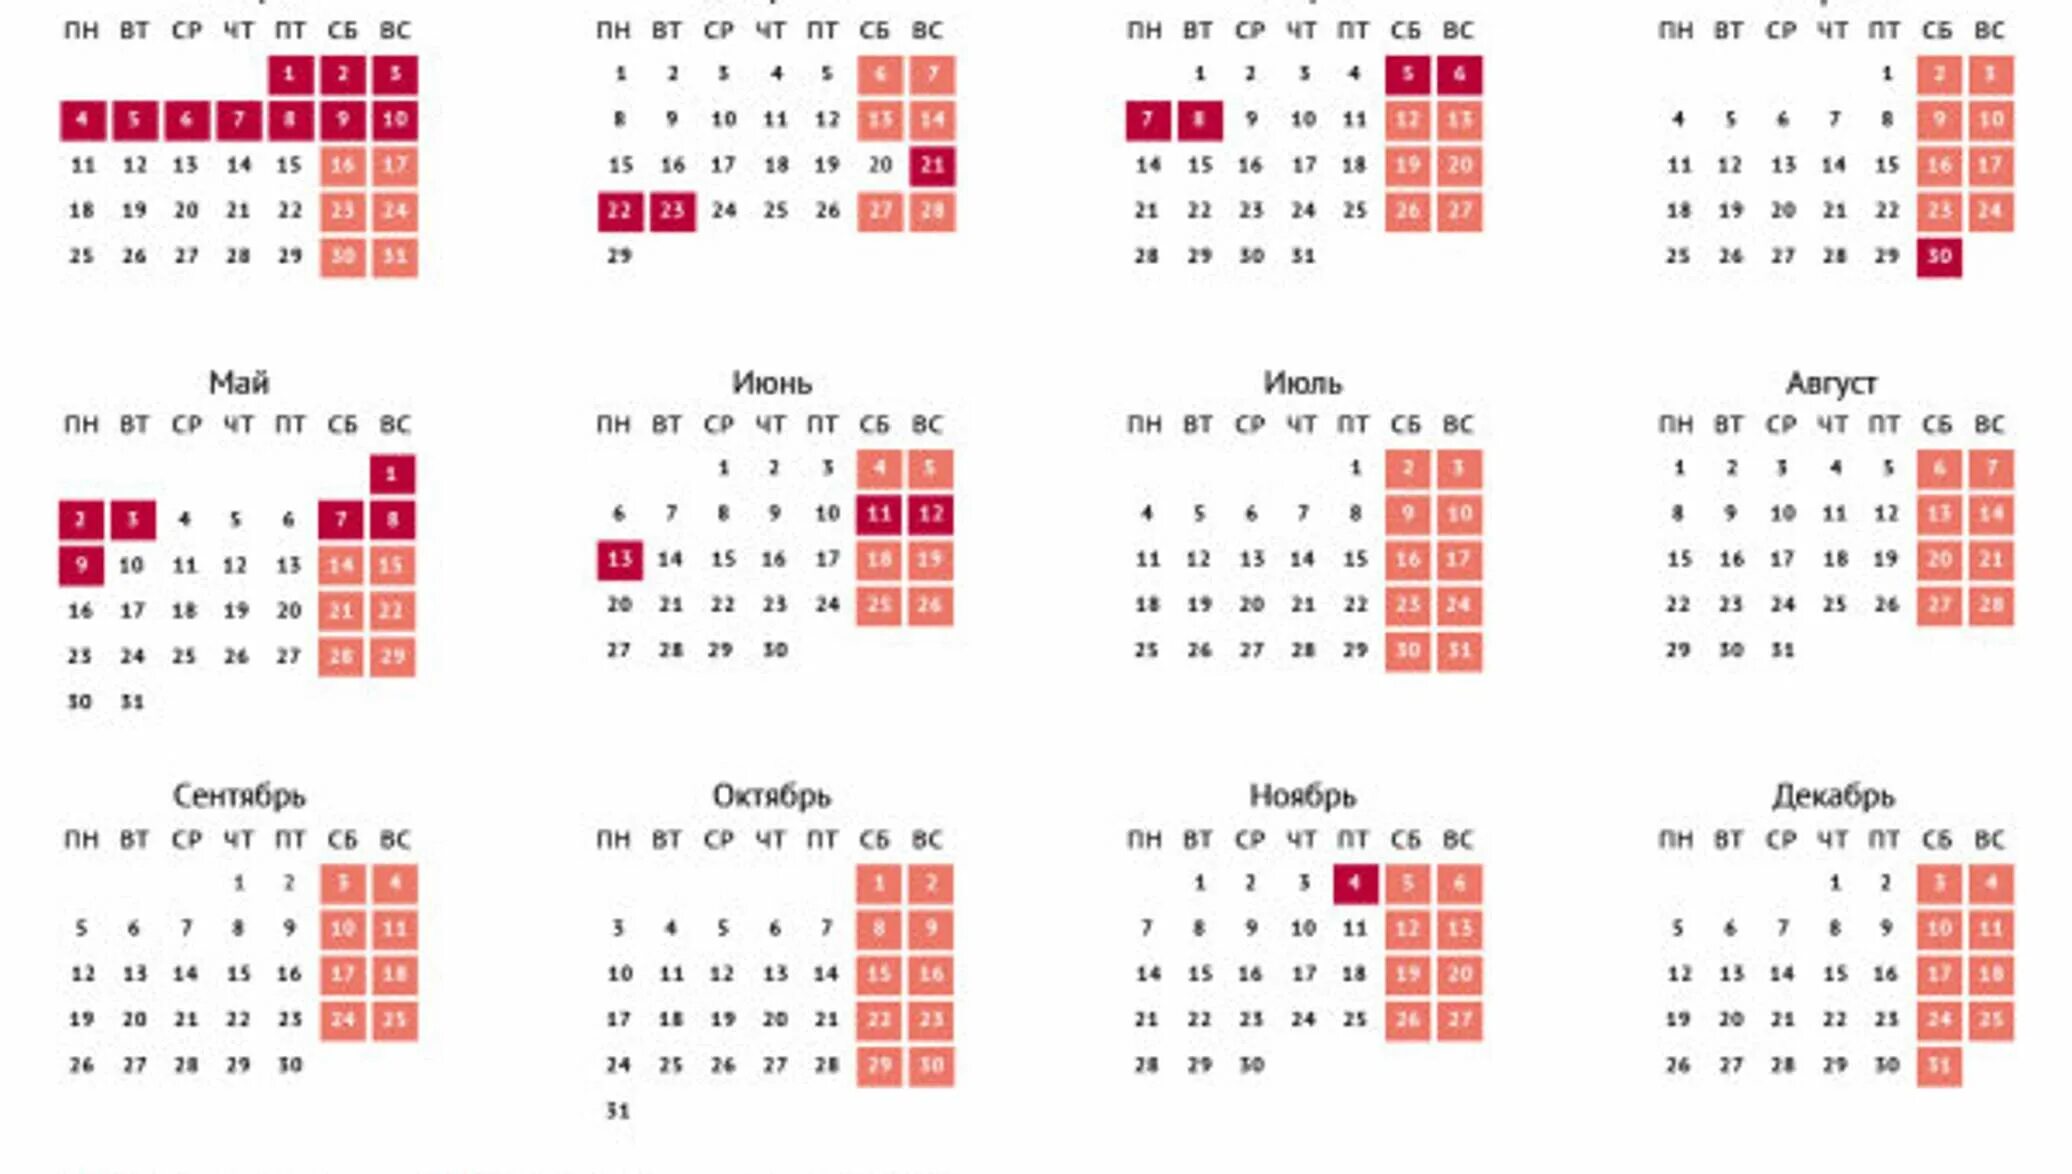 Производственный календарь выходные и праздничные дни. Календарь на 2017 год с праздниками и выходными. Календарь 2017 года с праздничными днями и выходными днями. Выходные дни в 2015 году. Календарь на 2016 год с праздниками и выходными.